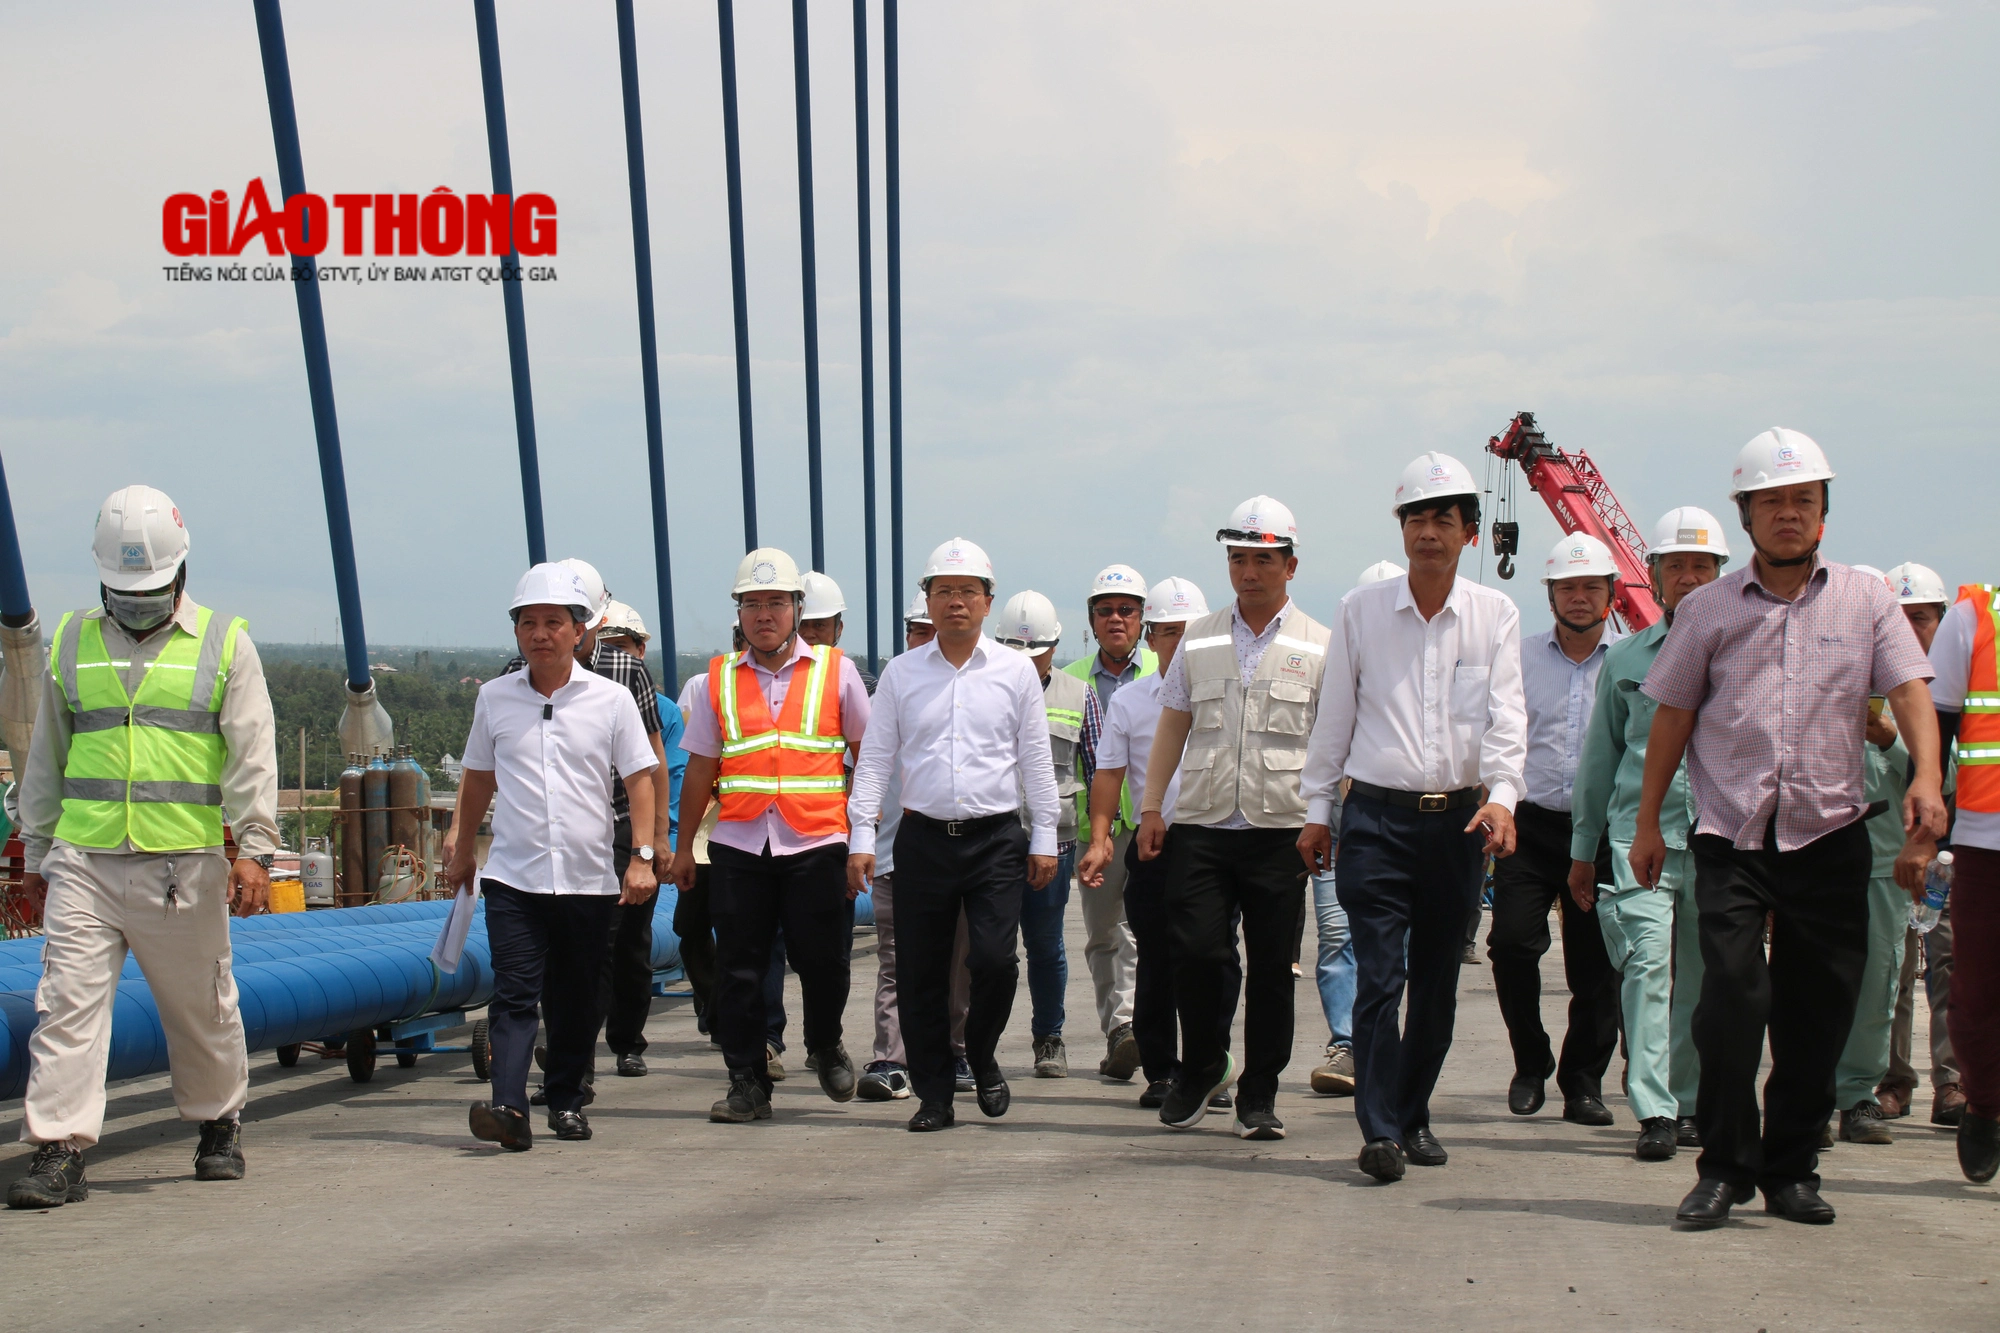 Cầu Mỹ Thuận 2 hợp long sớm 1 tháng so kế hoạch - Ảnh 5.